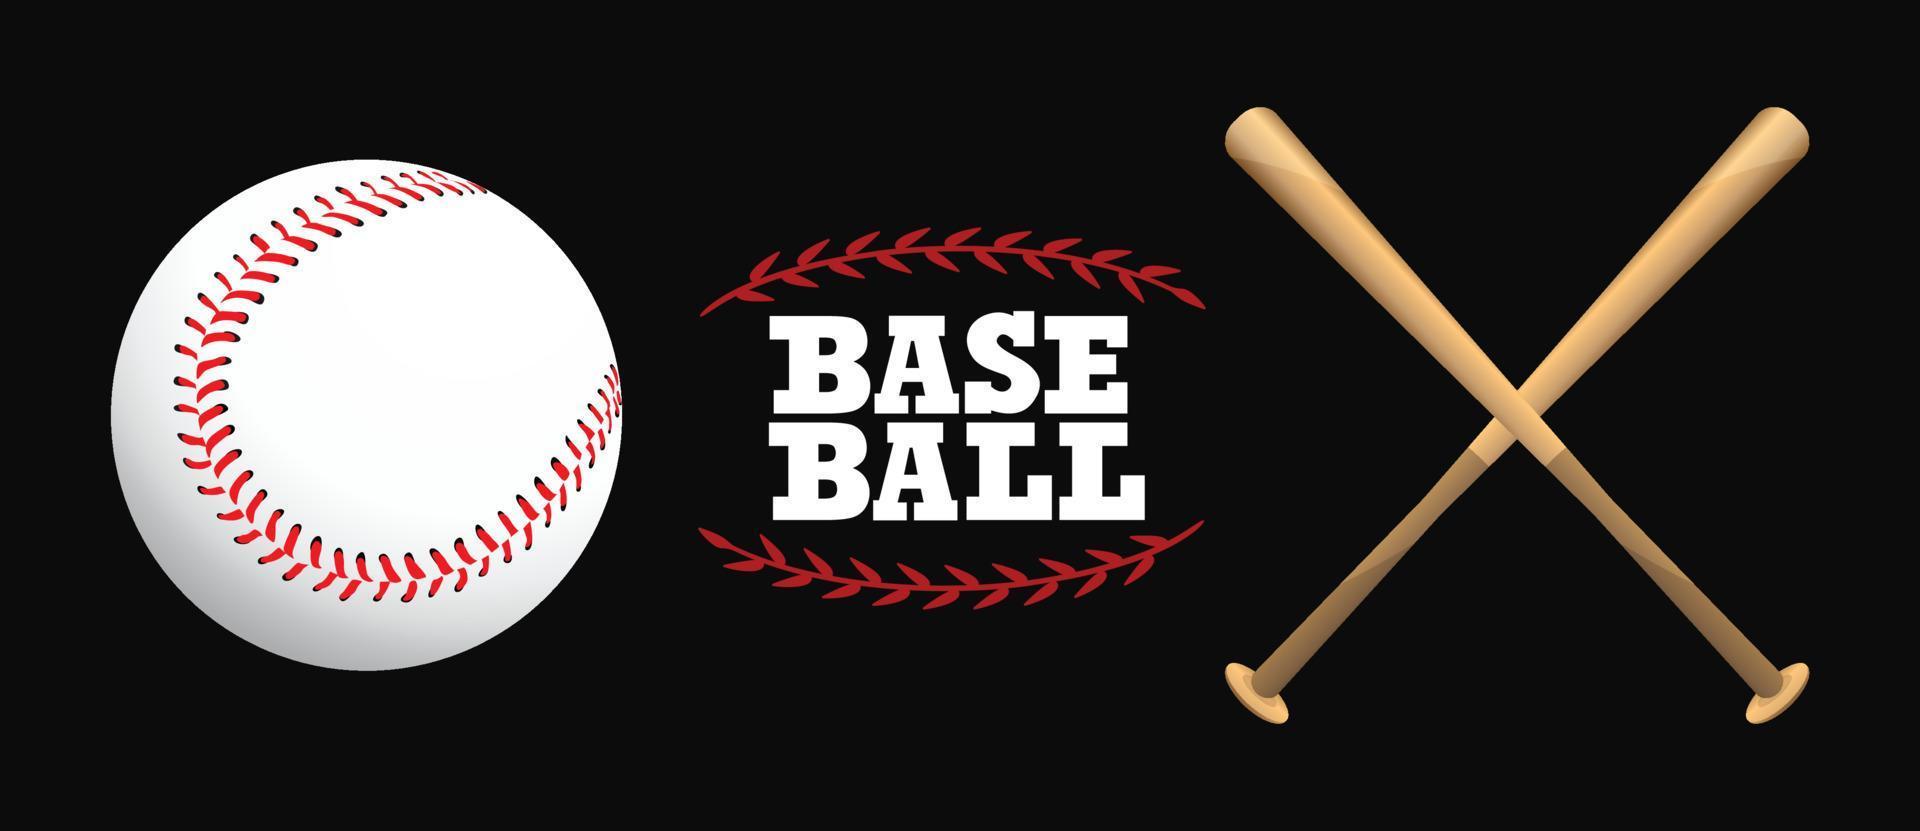 béisbol y bates de béisbol sobre un fondo blanco, juego de deporte, ilustración vectorial. vector